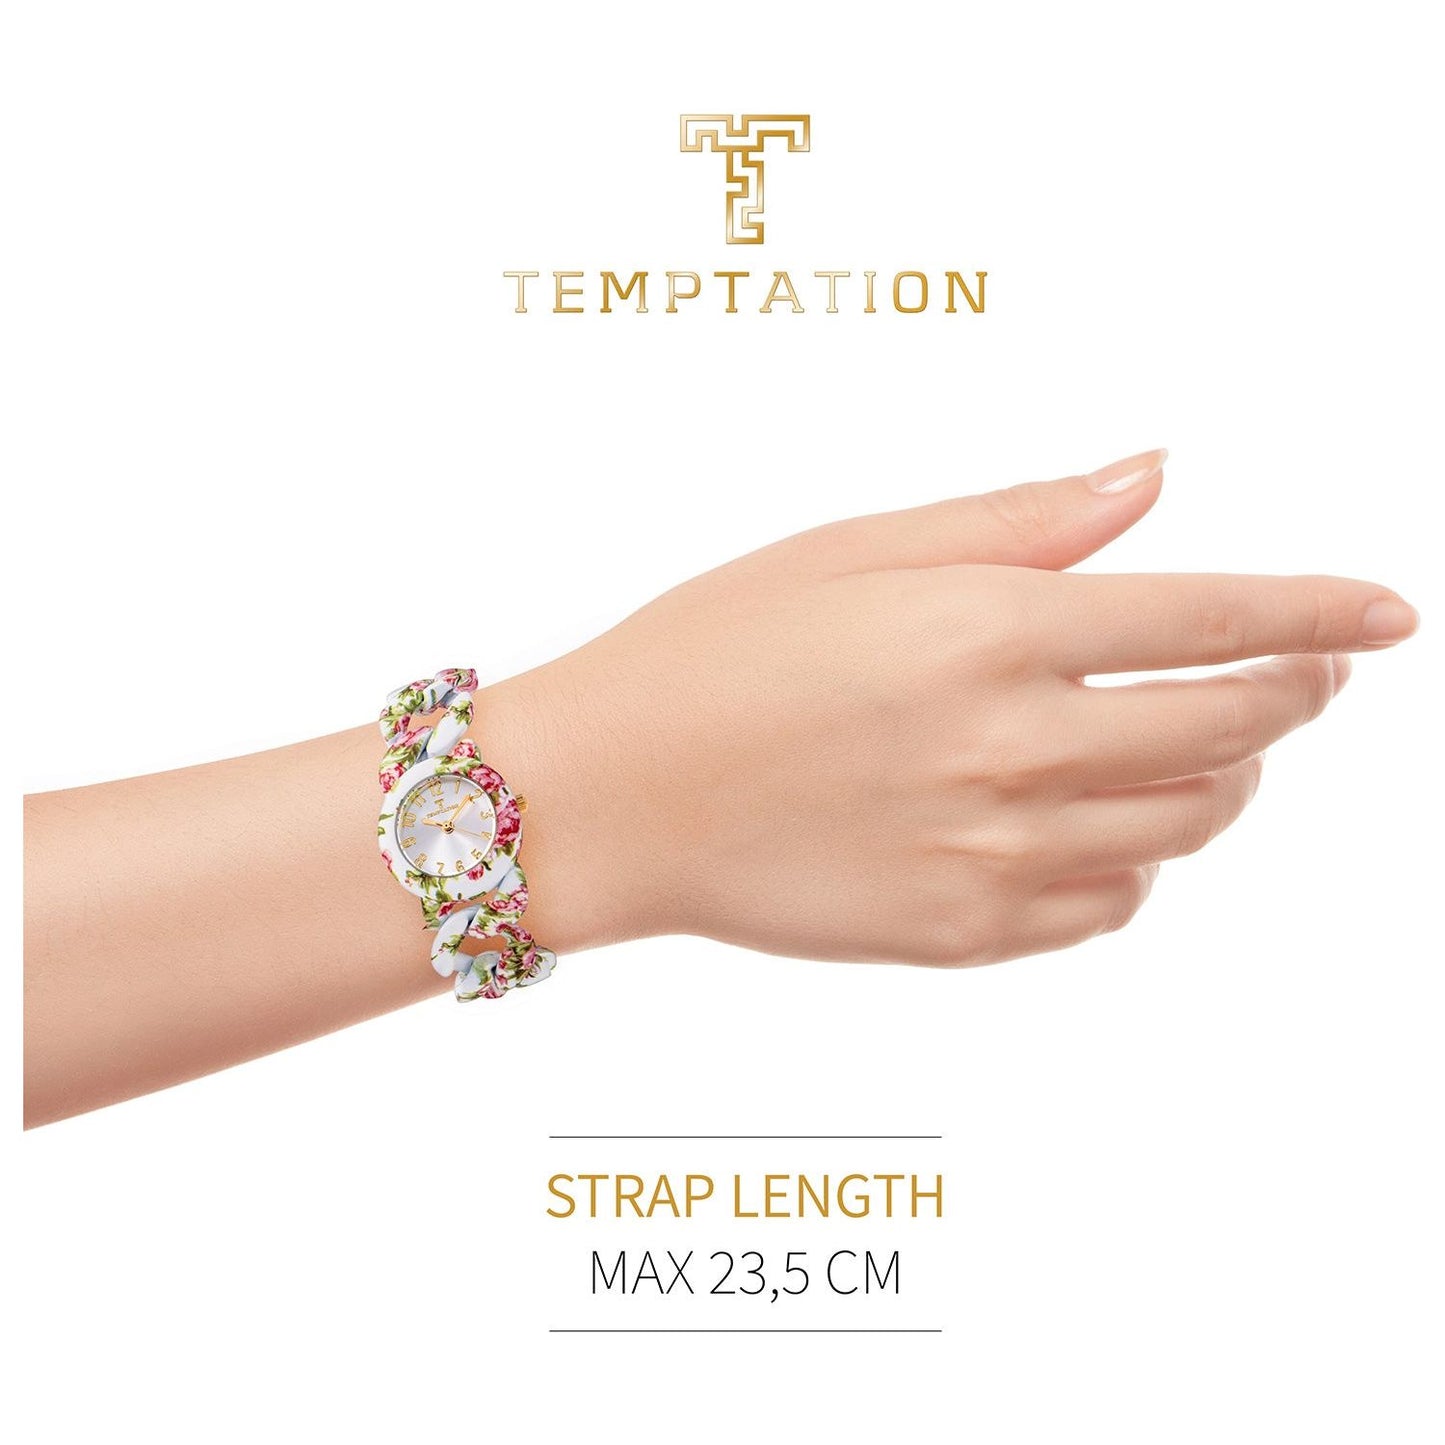 TEMPTATION TEMPTATION MOD. TEA-2015-02 WATCHES temptation-mod-tea-2015-02